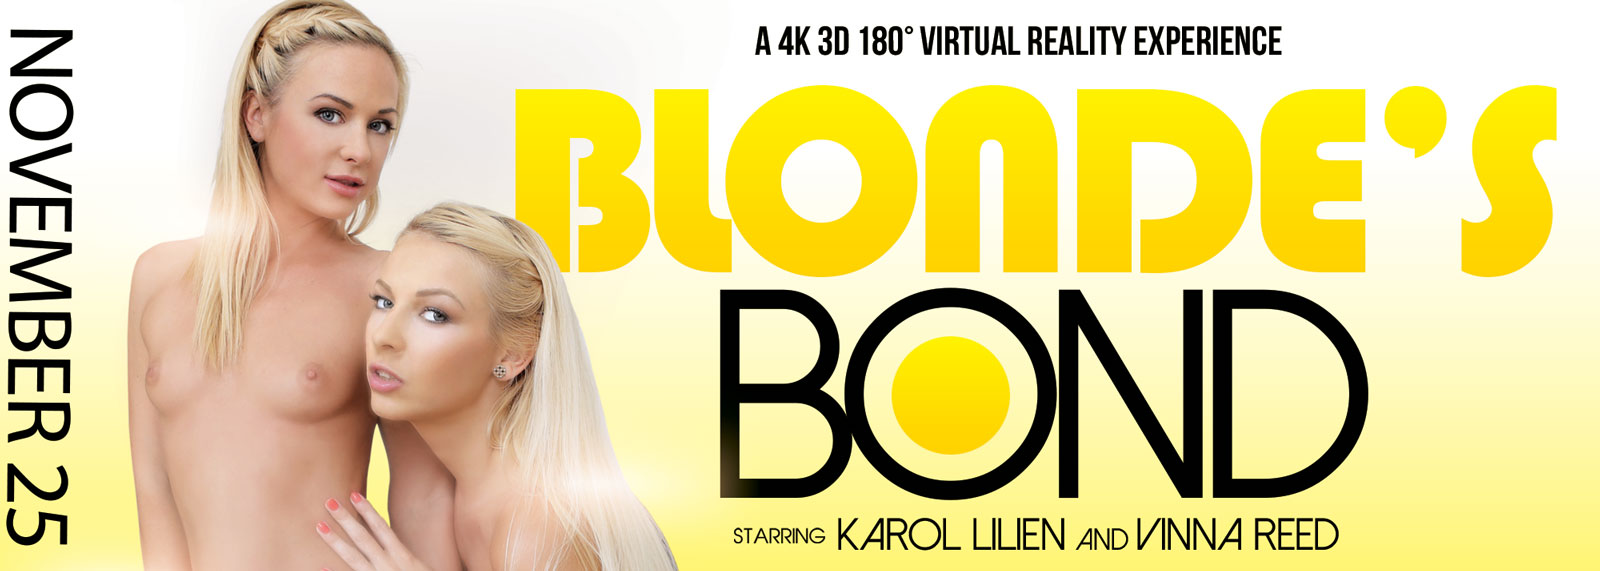 Blonde's Bond - VR Porn Video, Starring: Karol Lilien, Vinna Reed